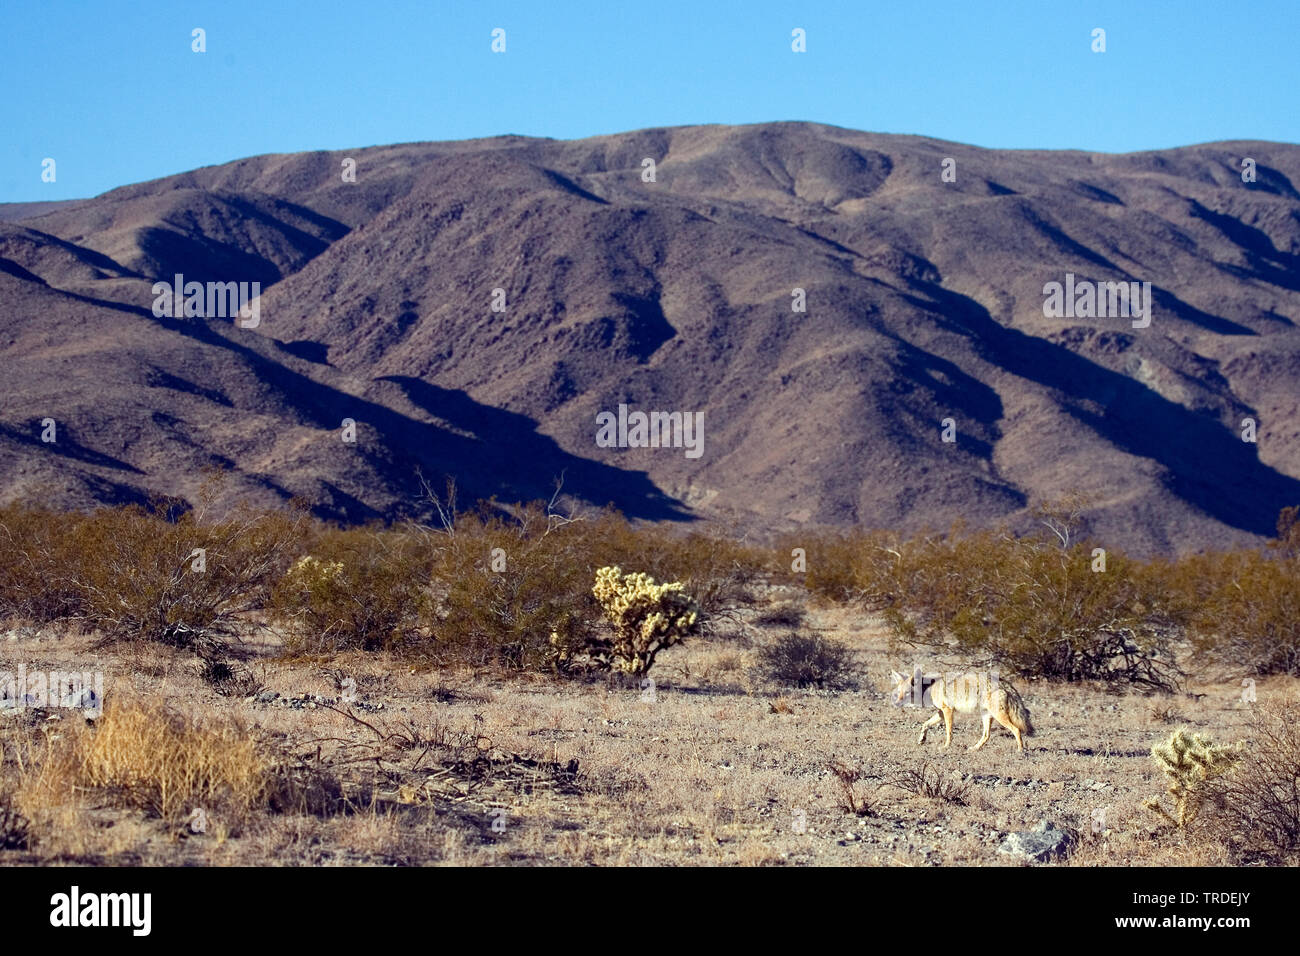 coyote (Canis latrans), USA, California, Joshua Tree National Park Stock Photo